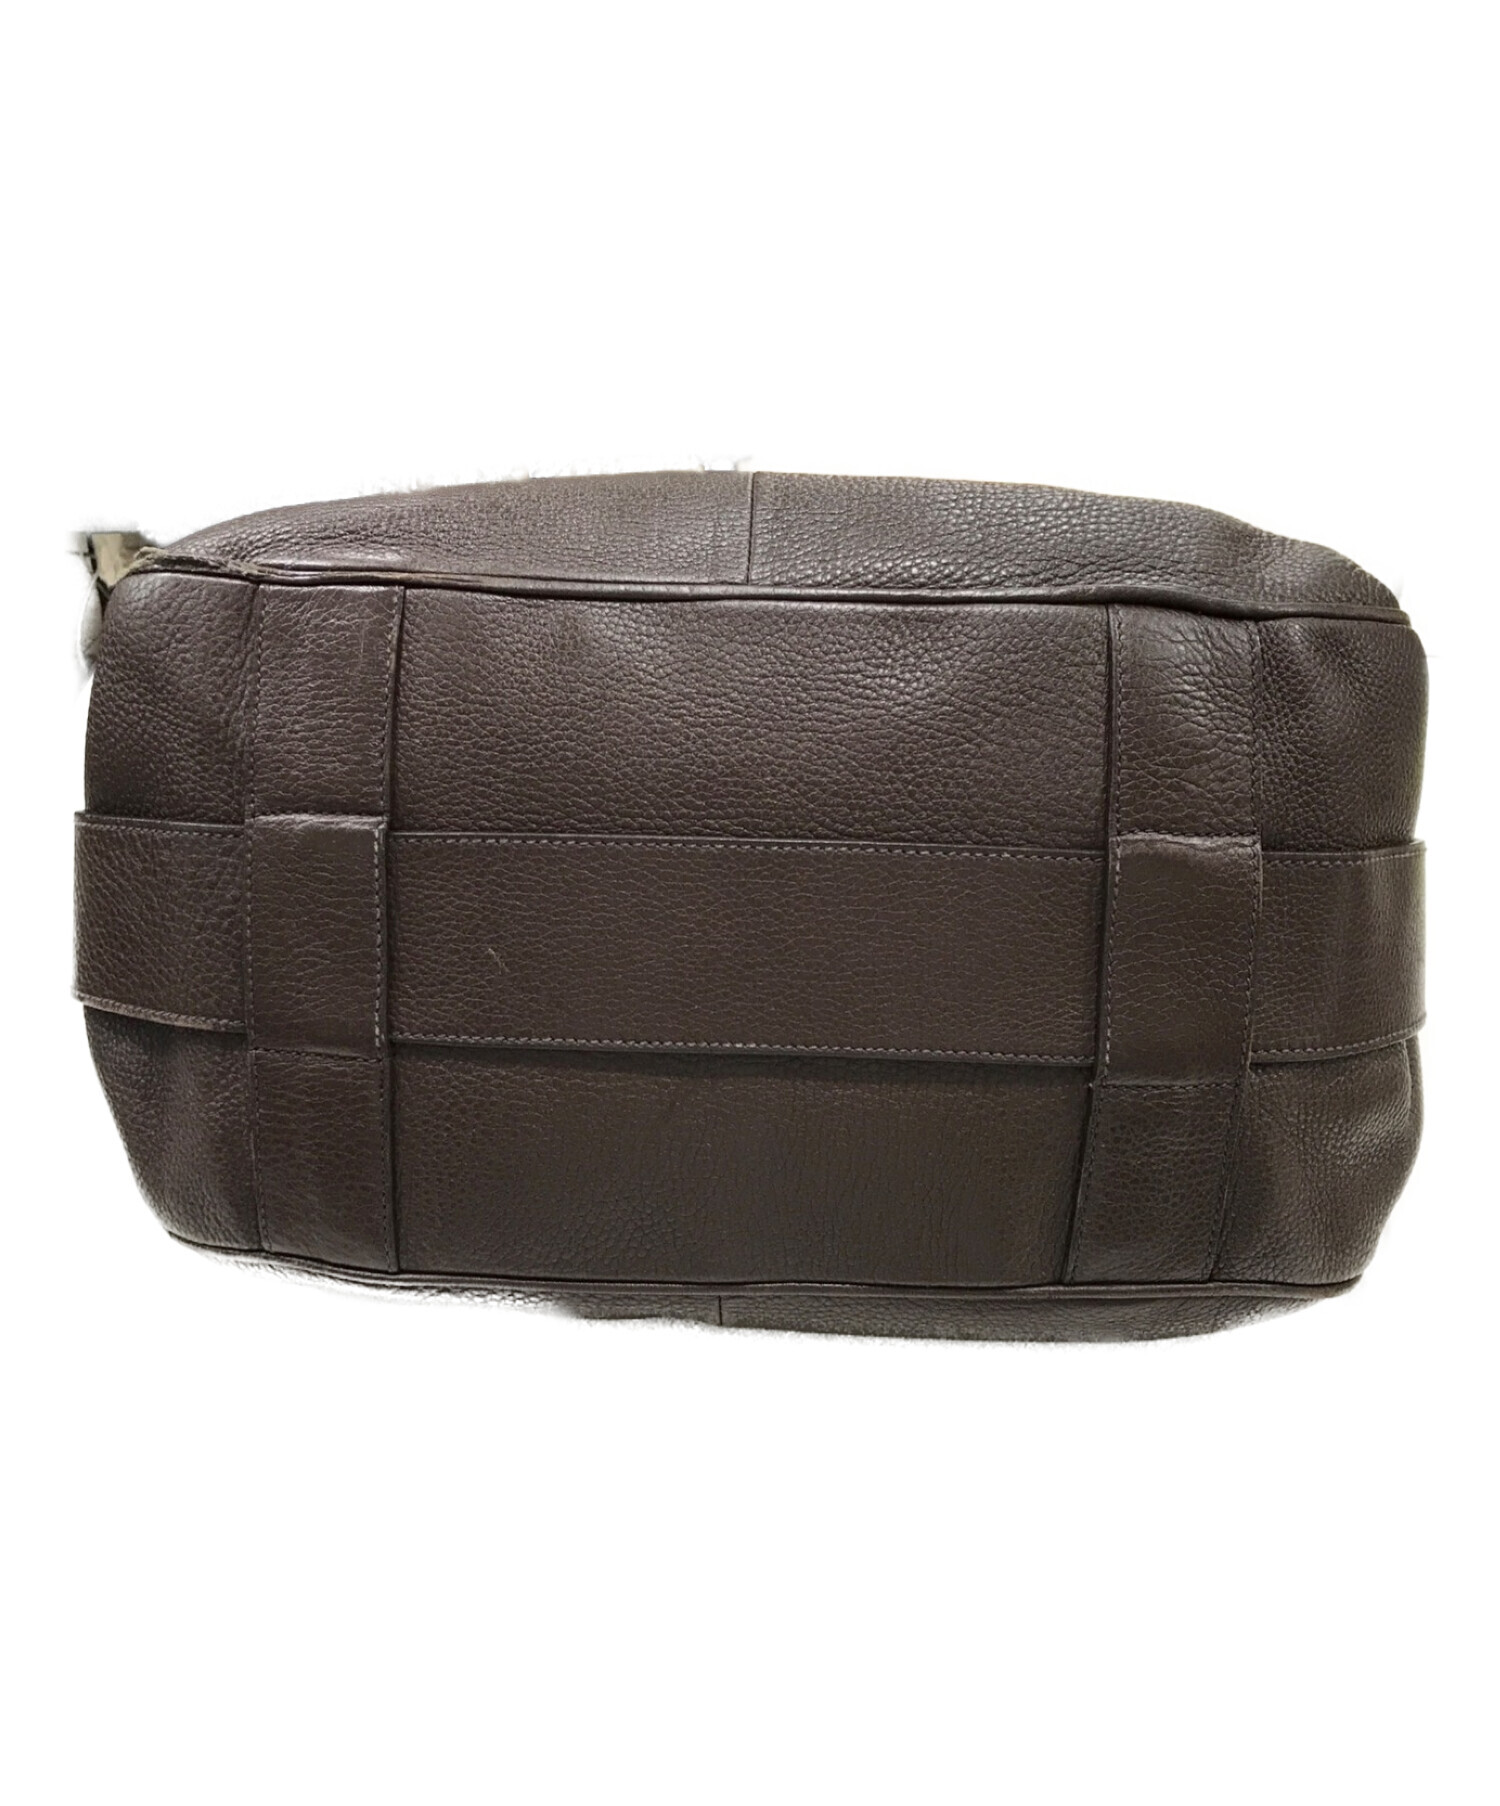 Jil Sander 'journal' Small Leather Foldover Shoulder Bag Women